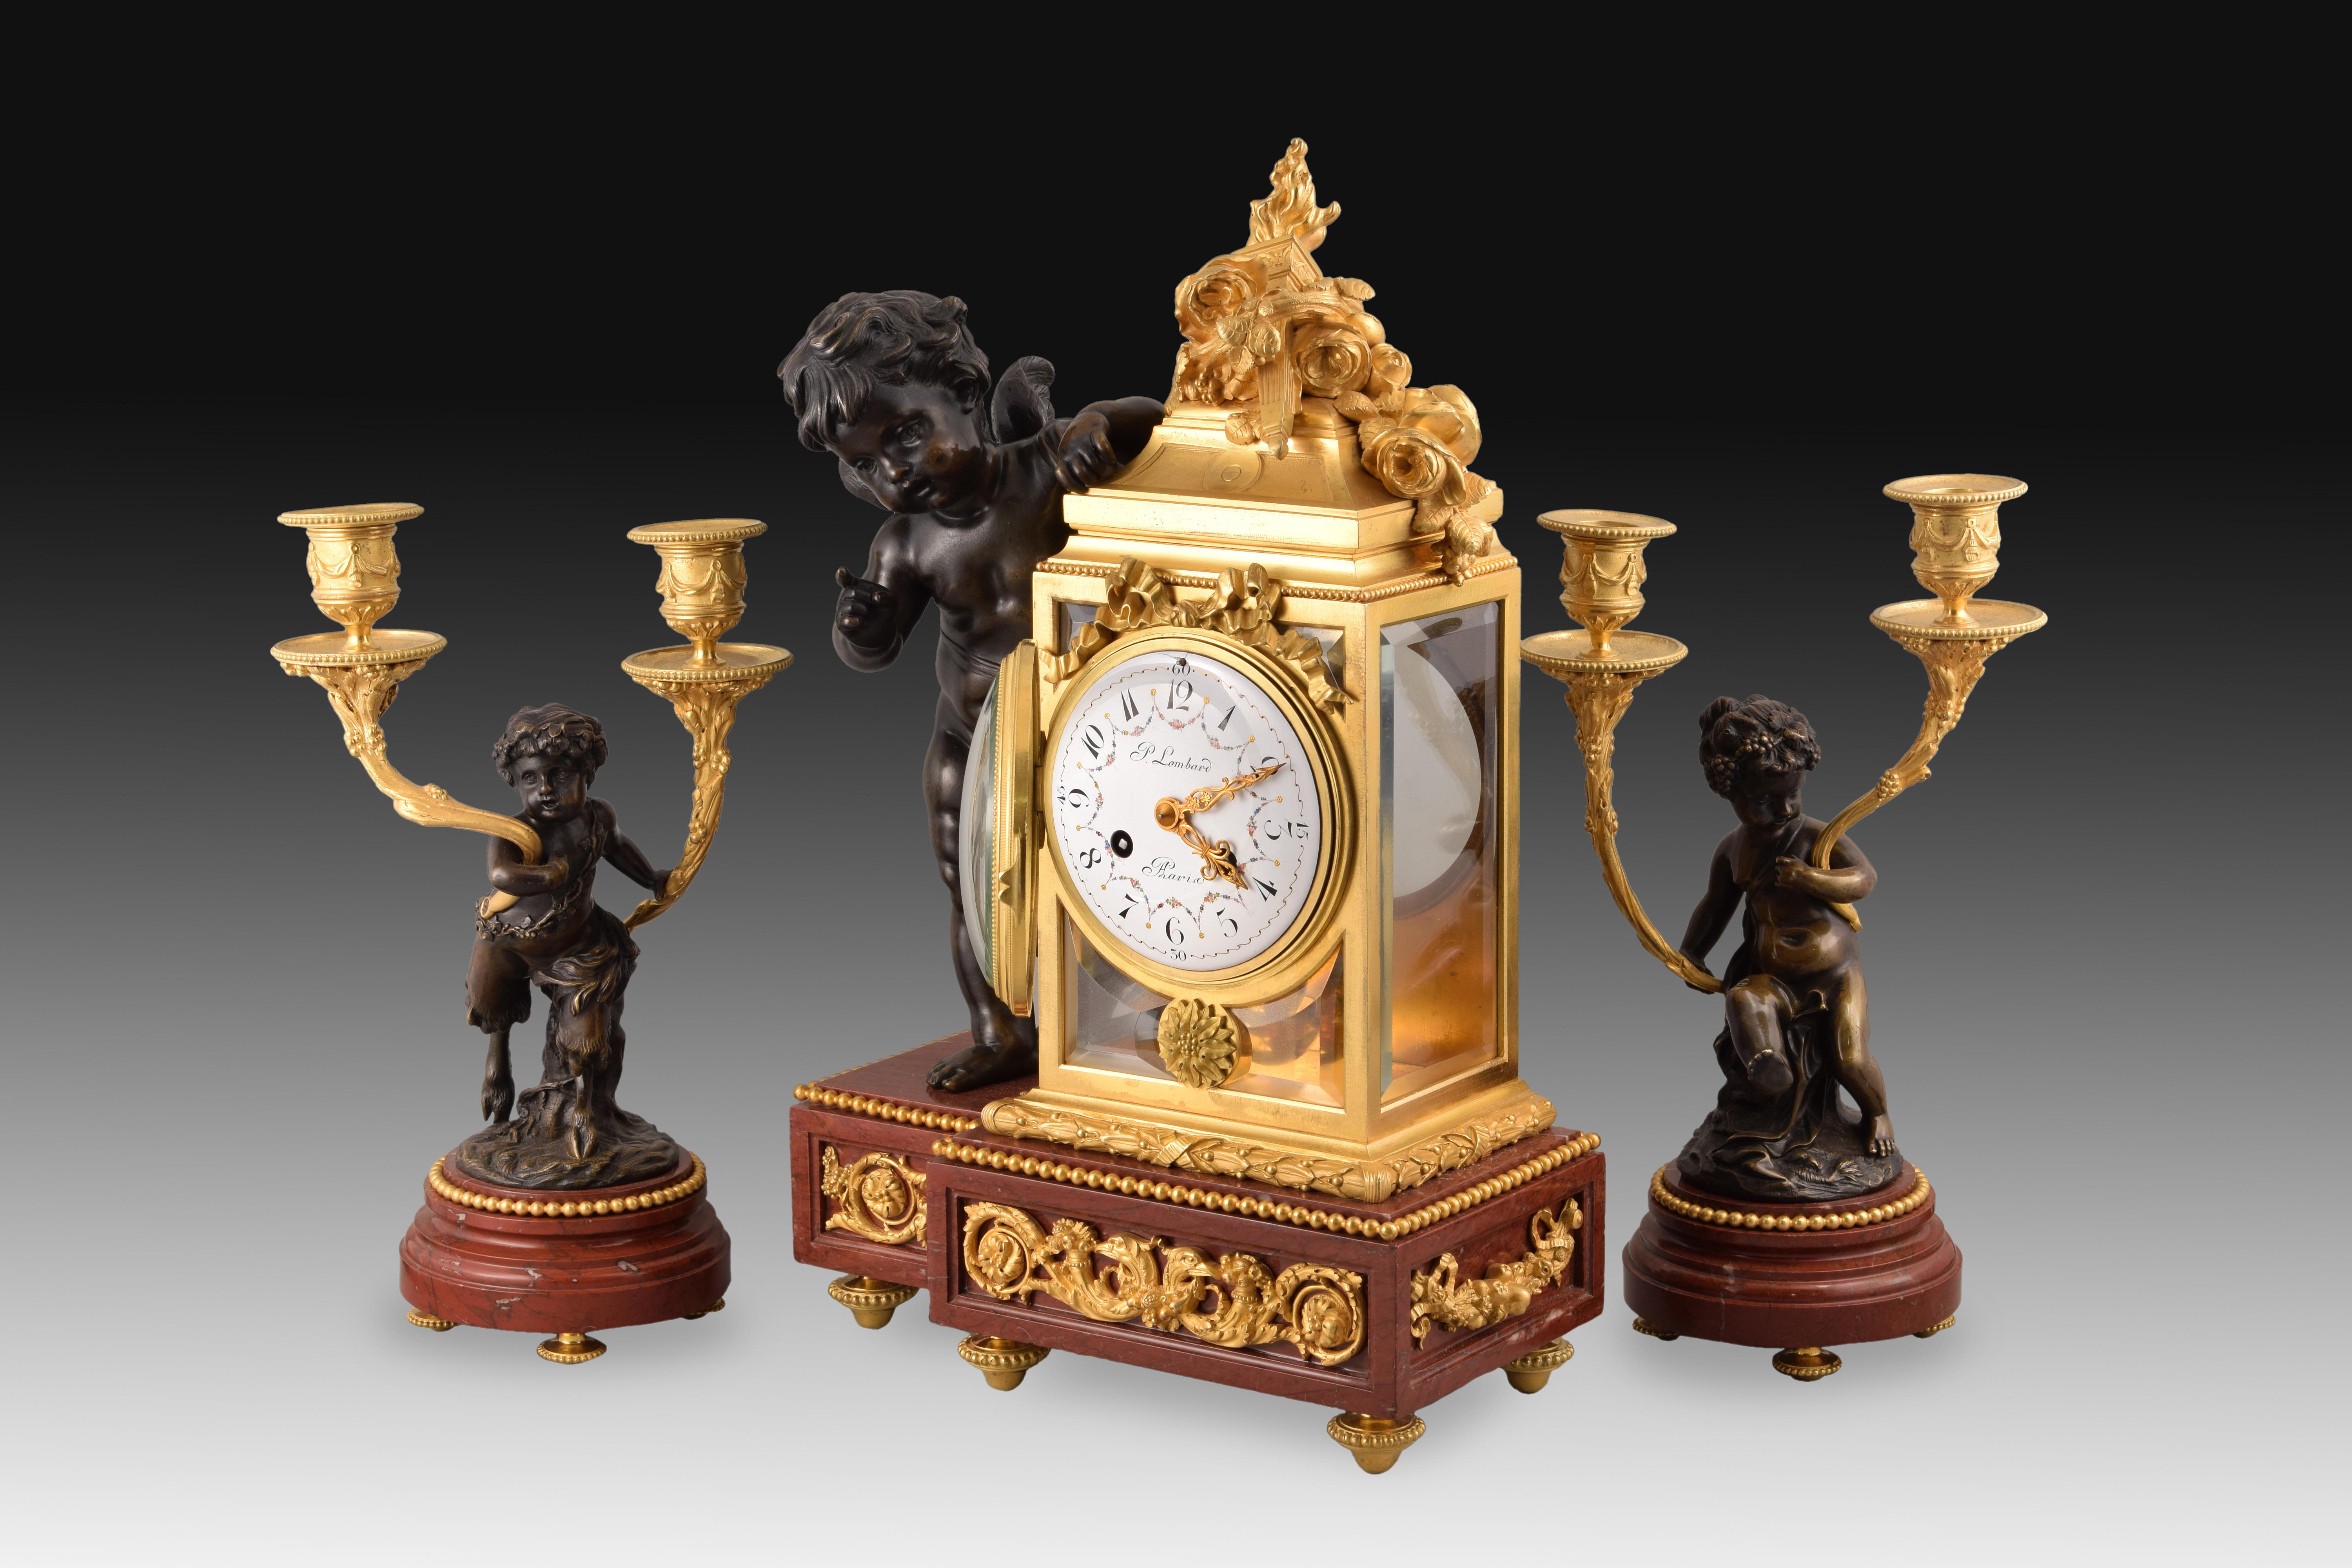 Uhrengarnitur und zwei Kerzenständer. Bronze, Marmor rouge griotte. Frankreich, 19. Jahrhundert, nach den Modellen von Clodion. 
Garnitur bestehend aus einer Tischuhr und zwei Kerzenhaltern mit je zwei Lichtern, aus gebläuter und vergoldeter Bronze